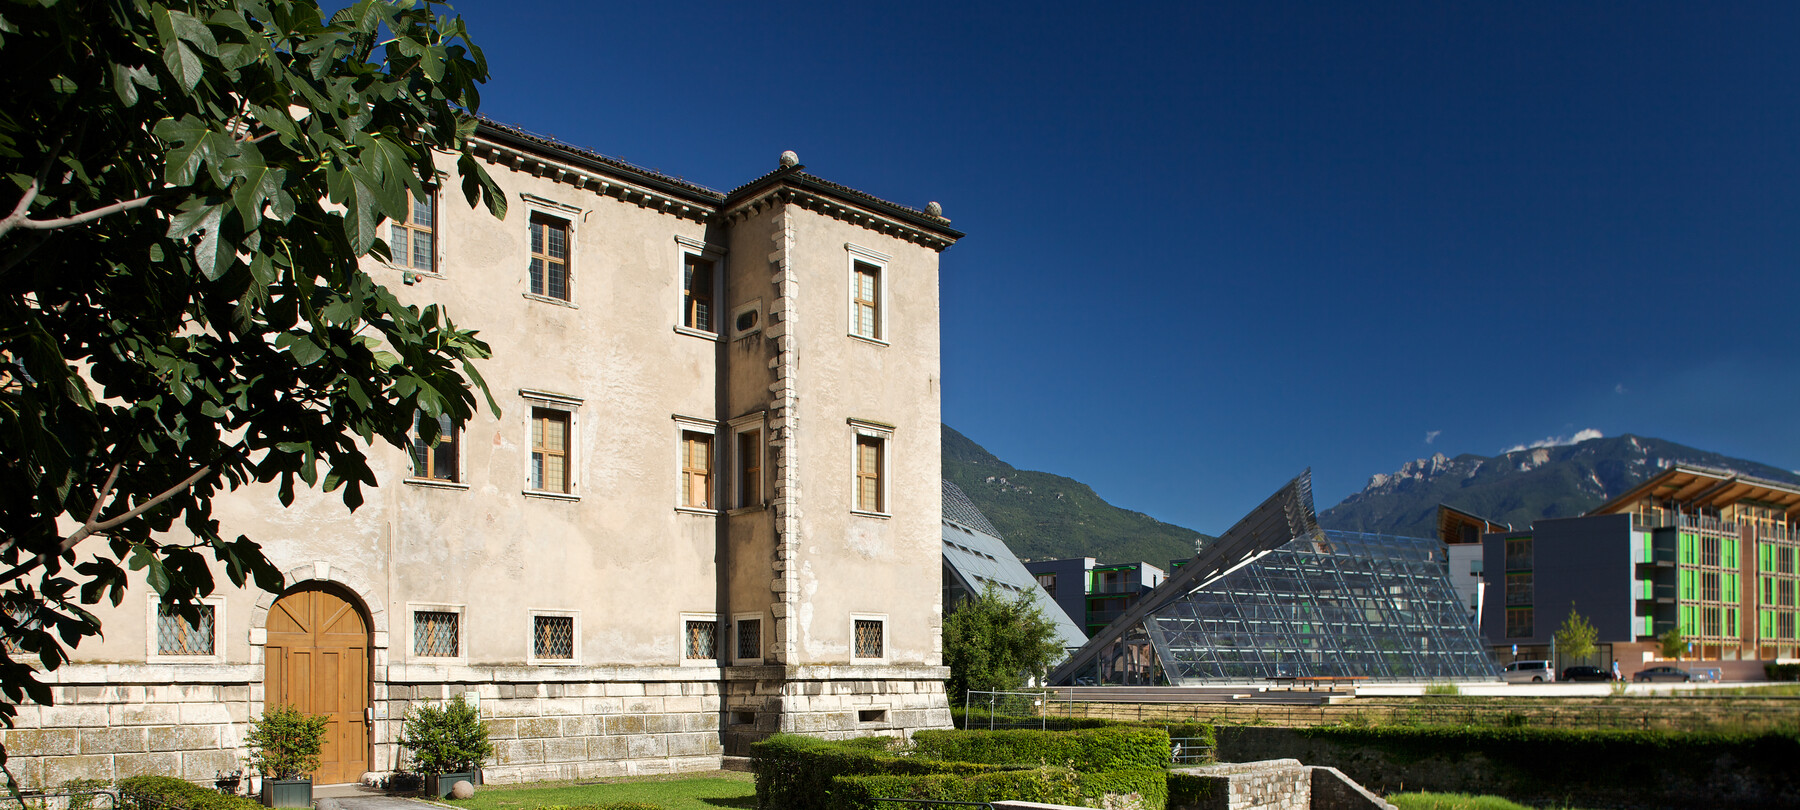 Valle dell'Adige - Trento - Palazzo Albere in primo piano e il Muse
